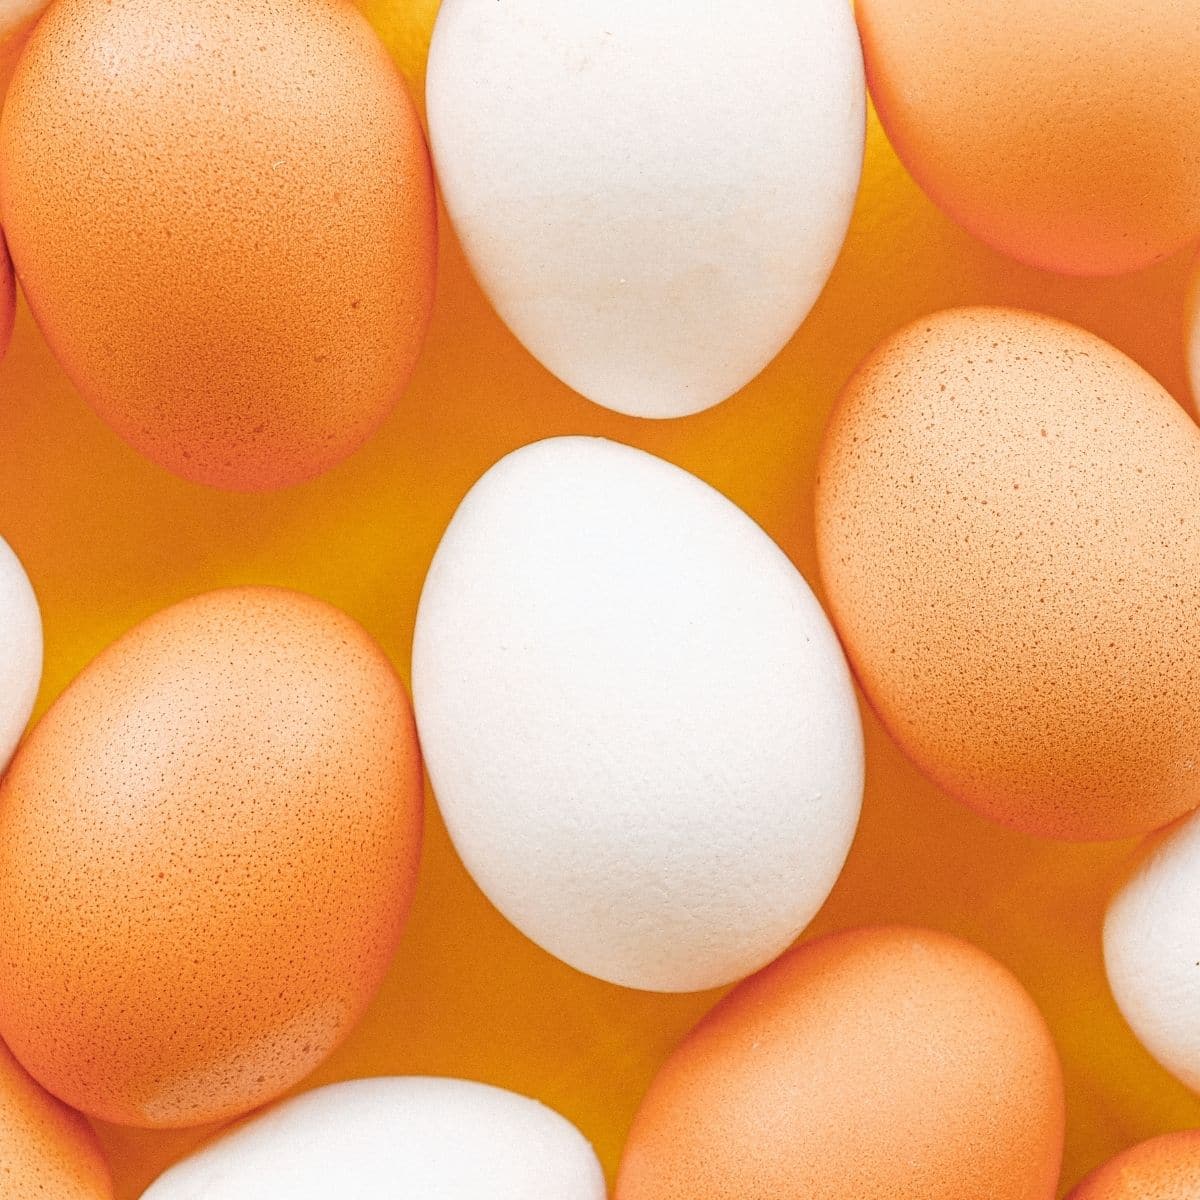 La mejor imagen cuadrada sustituta de eqq de una variedad de huevos marrones y blancos enteros.